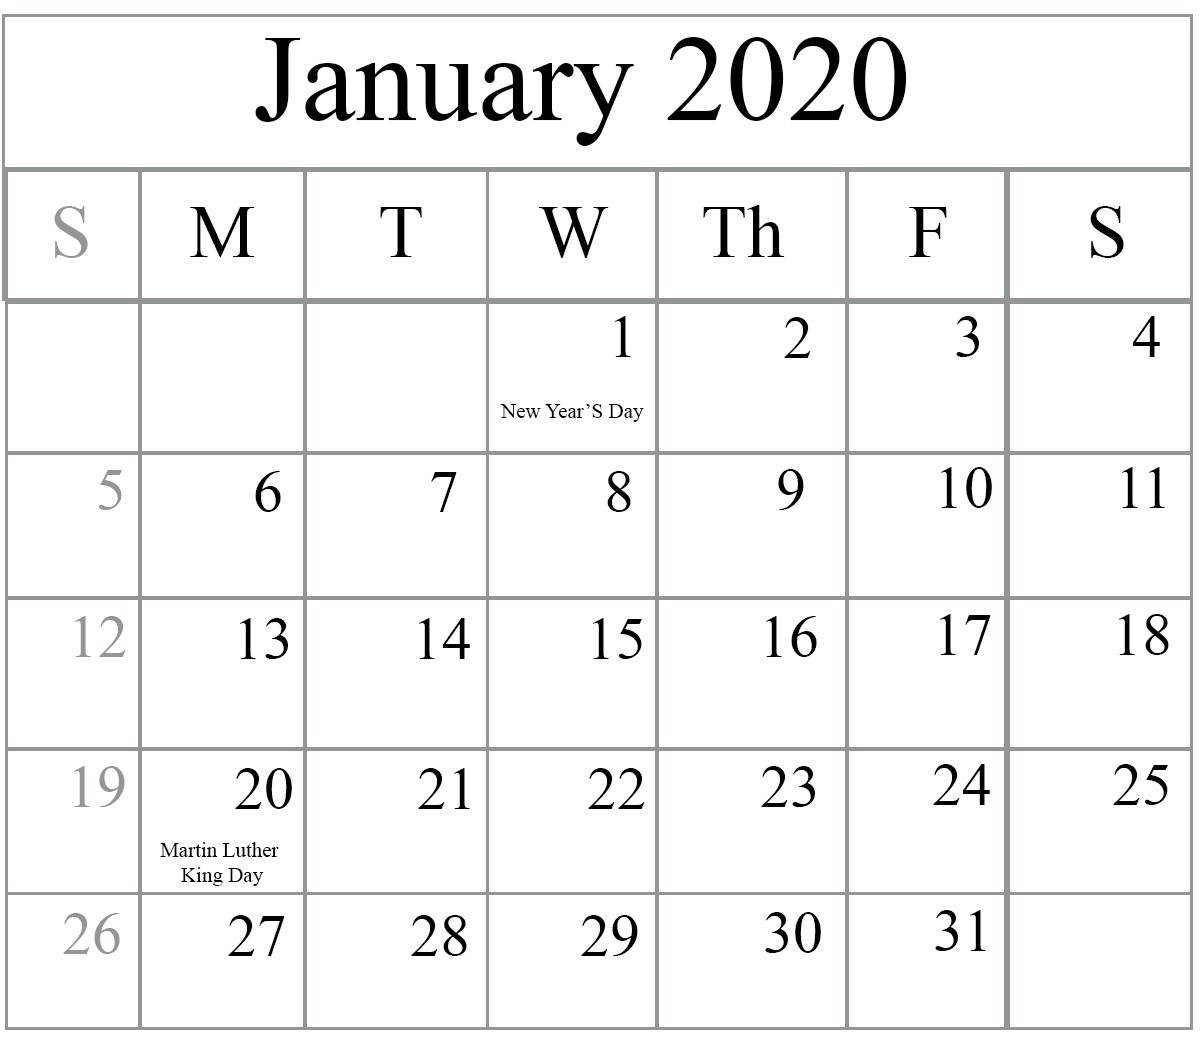 January 2020 Calendar Printable | Free Printable Calendar Extraordinary Free Printable Calendars 2020 Blanks Word